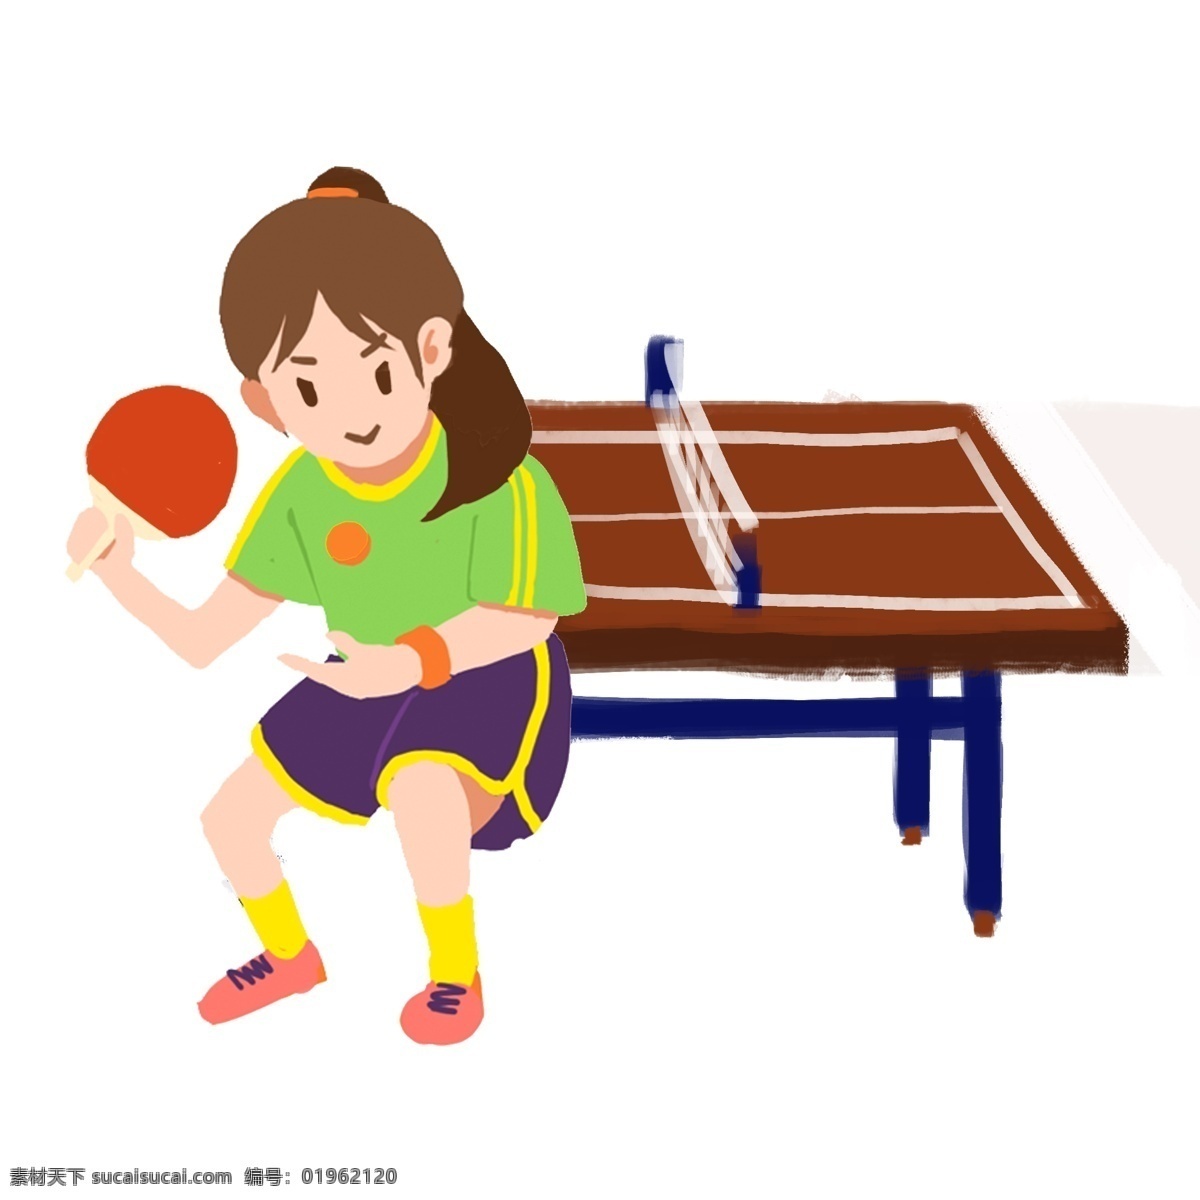 卡通 手绘 扁平 活力 马尾 运动 女孩 乒乓球 发球 乒乓球桌 卡通扁平 卡通女孩 卡通运动 乒乓球卡通 乒乓球桌卡通 扁平卡通